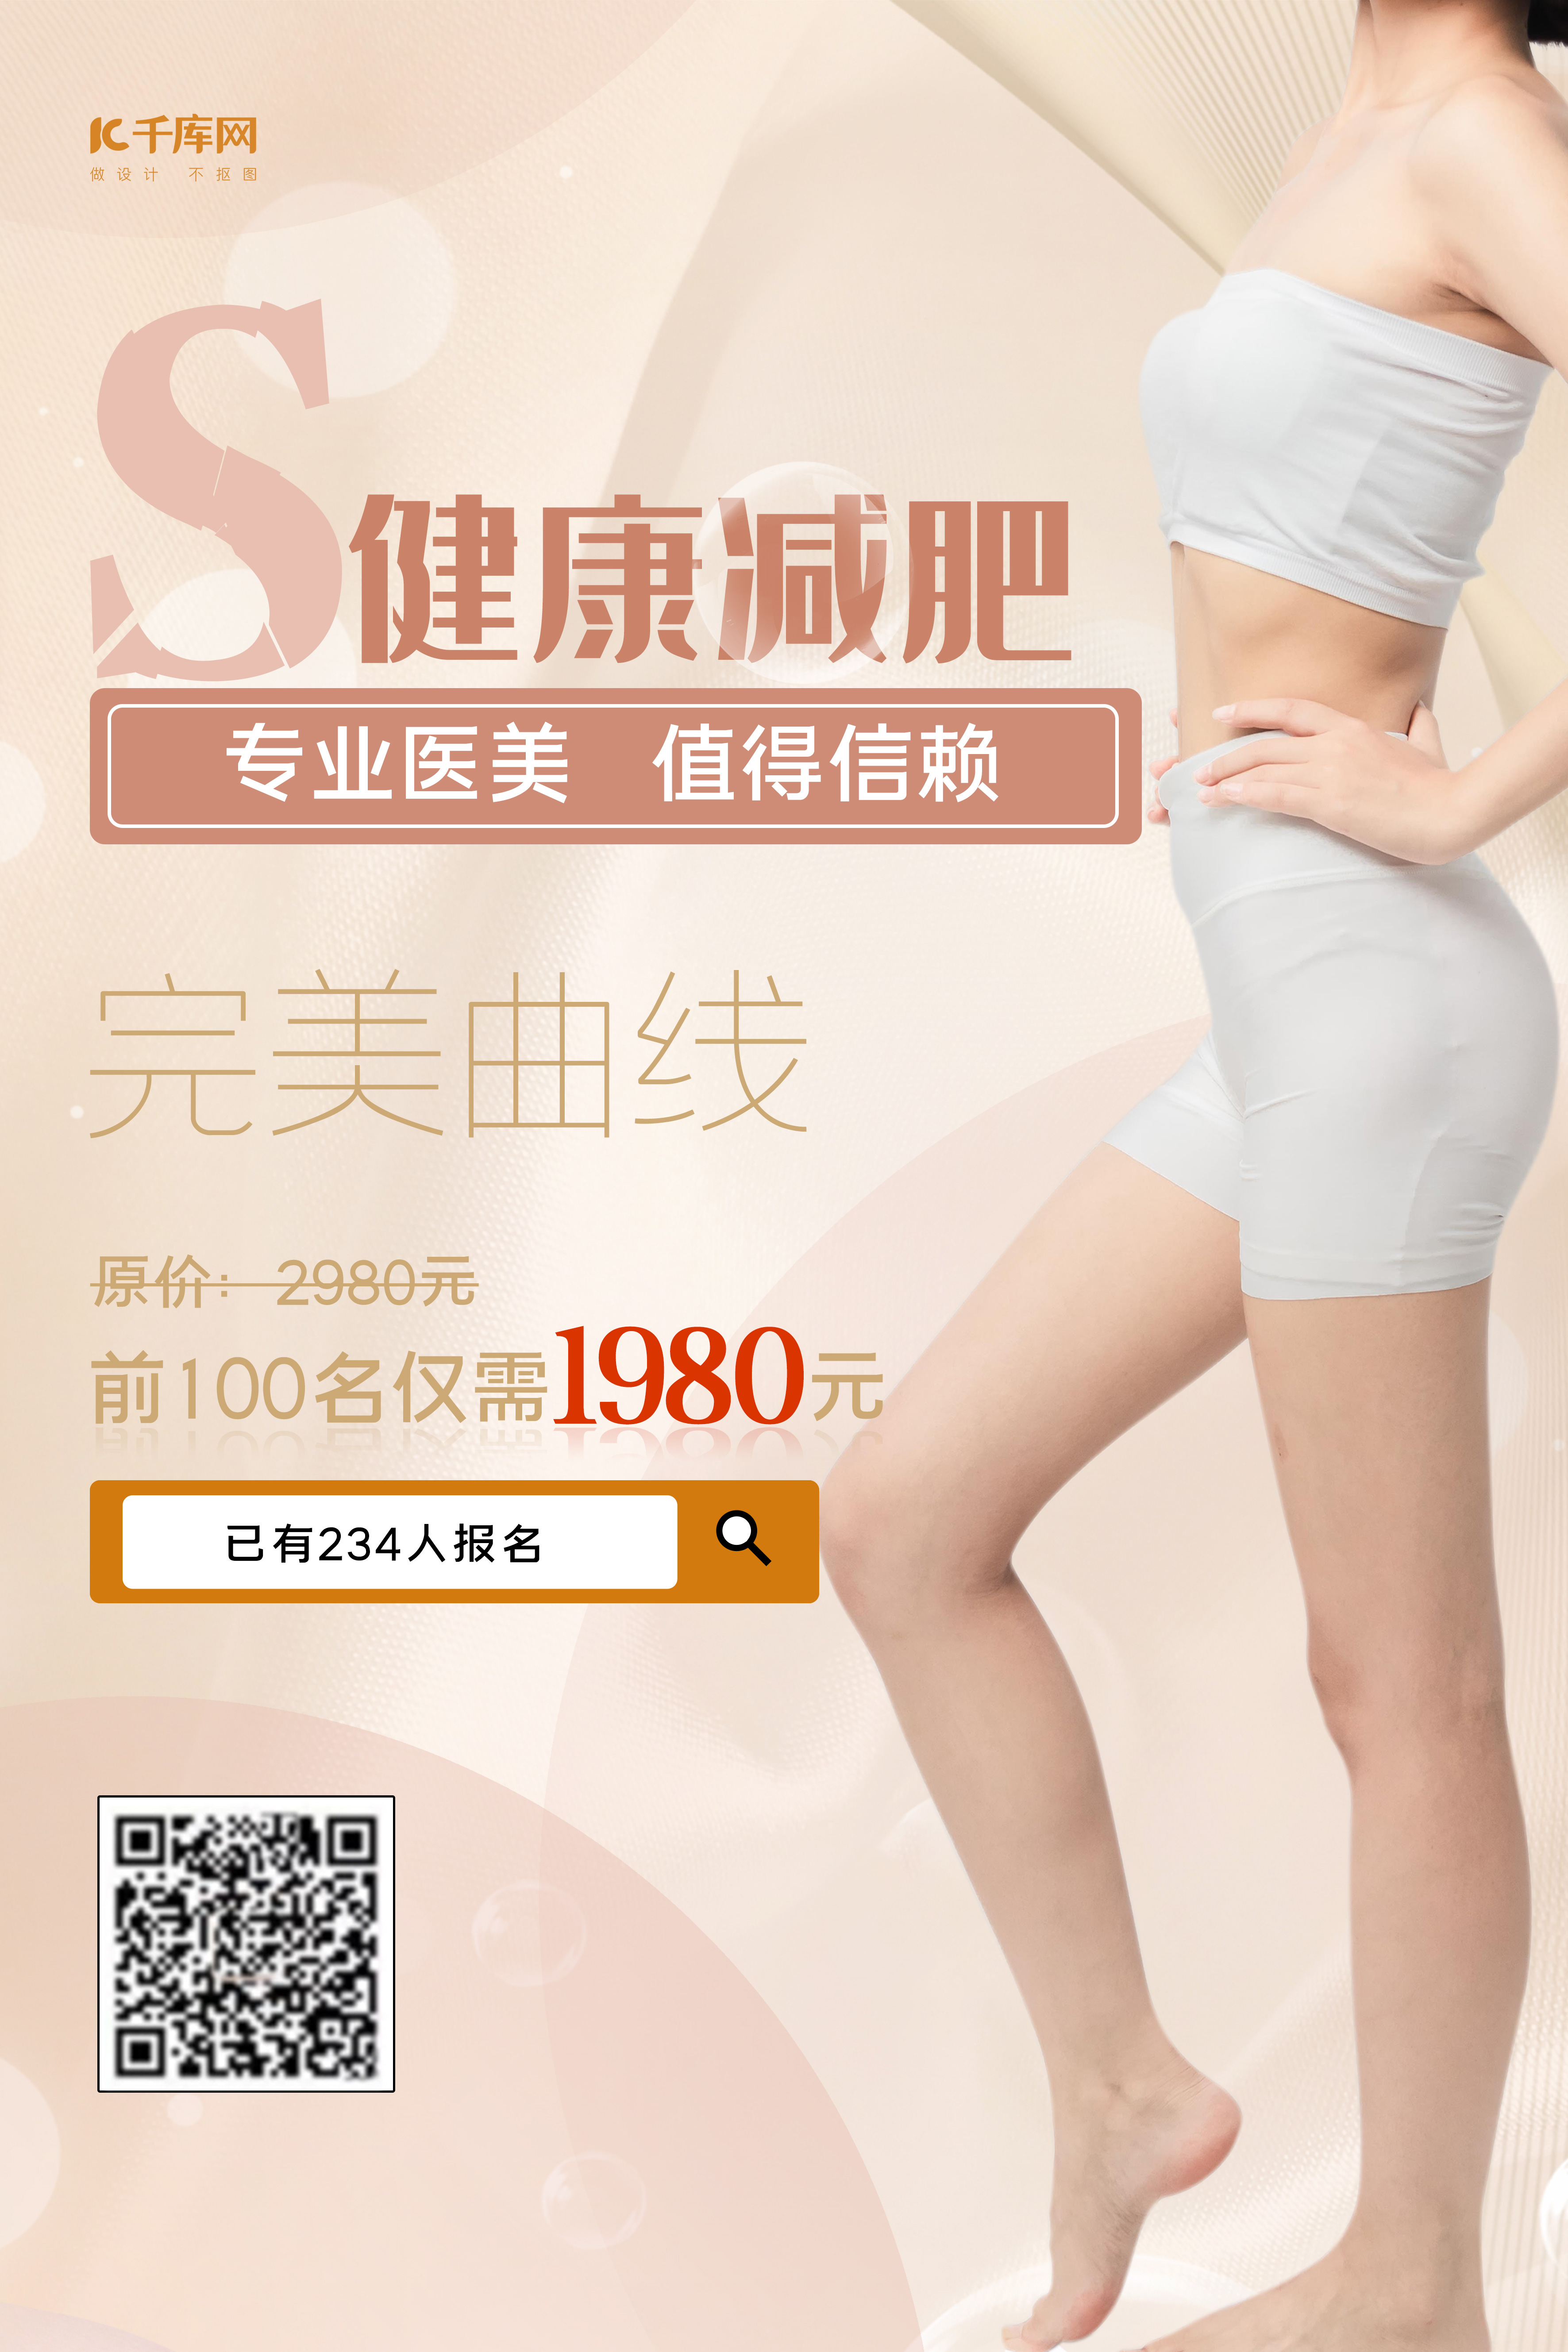 创意女性减肥塑身主题海报设计模板下载(图片ID:2319157)_-海报设计-广告设计模板-PSD素材_ 素材宝 scbao.com